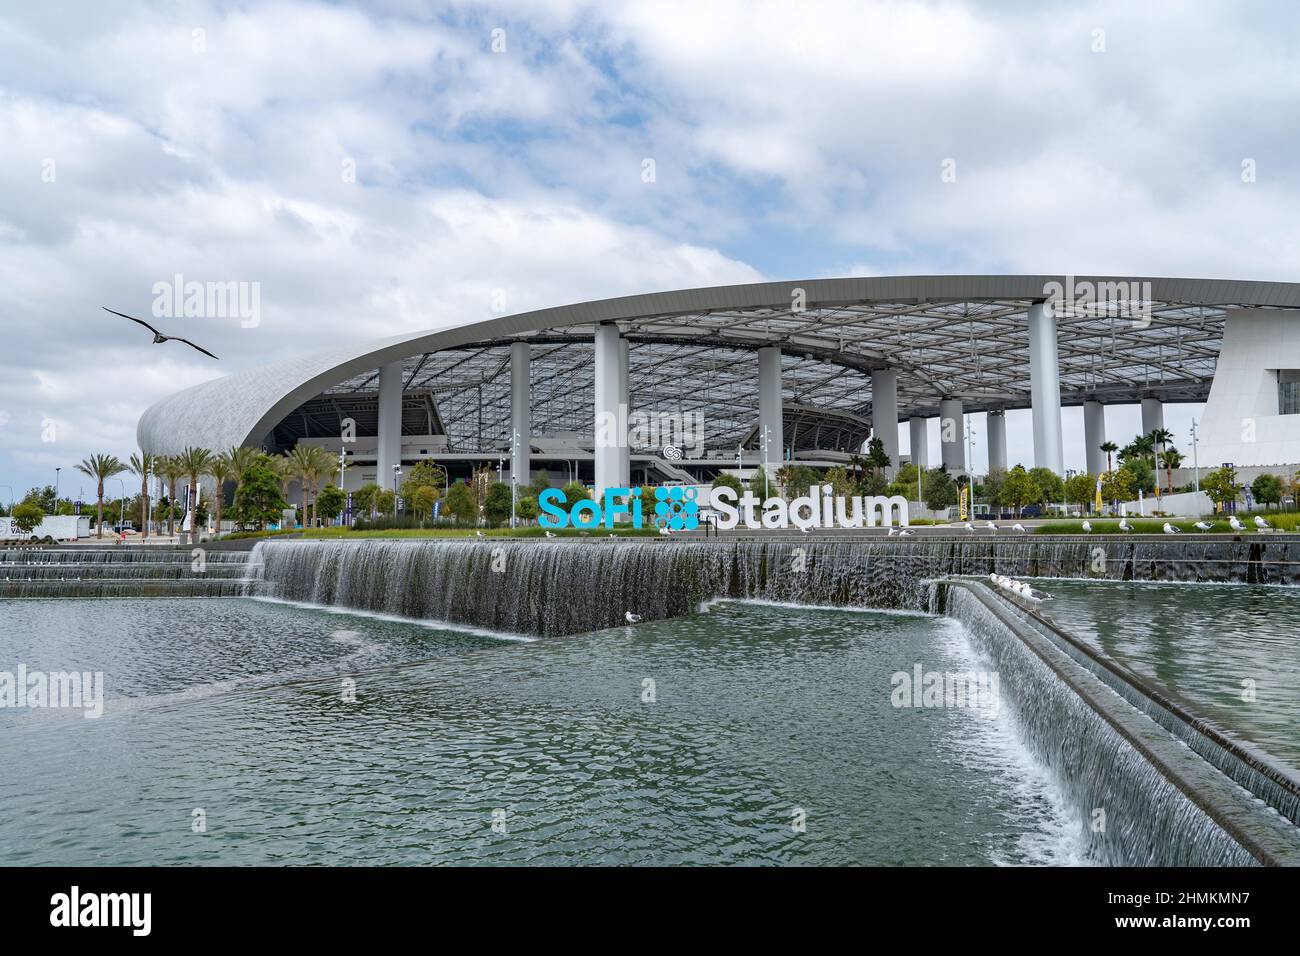 Das Sofi Stadium mit Wasserfall ist ein modernes Fußballstadion in Los Angeles, Kalifornien Stockfoto